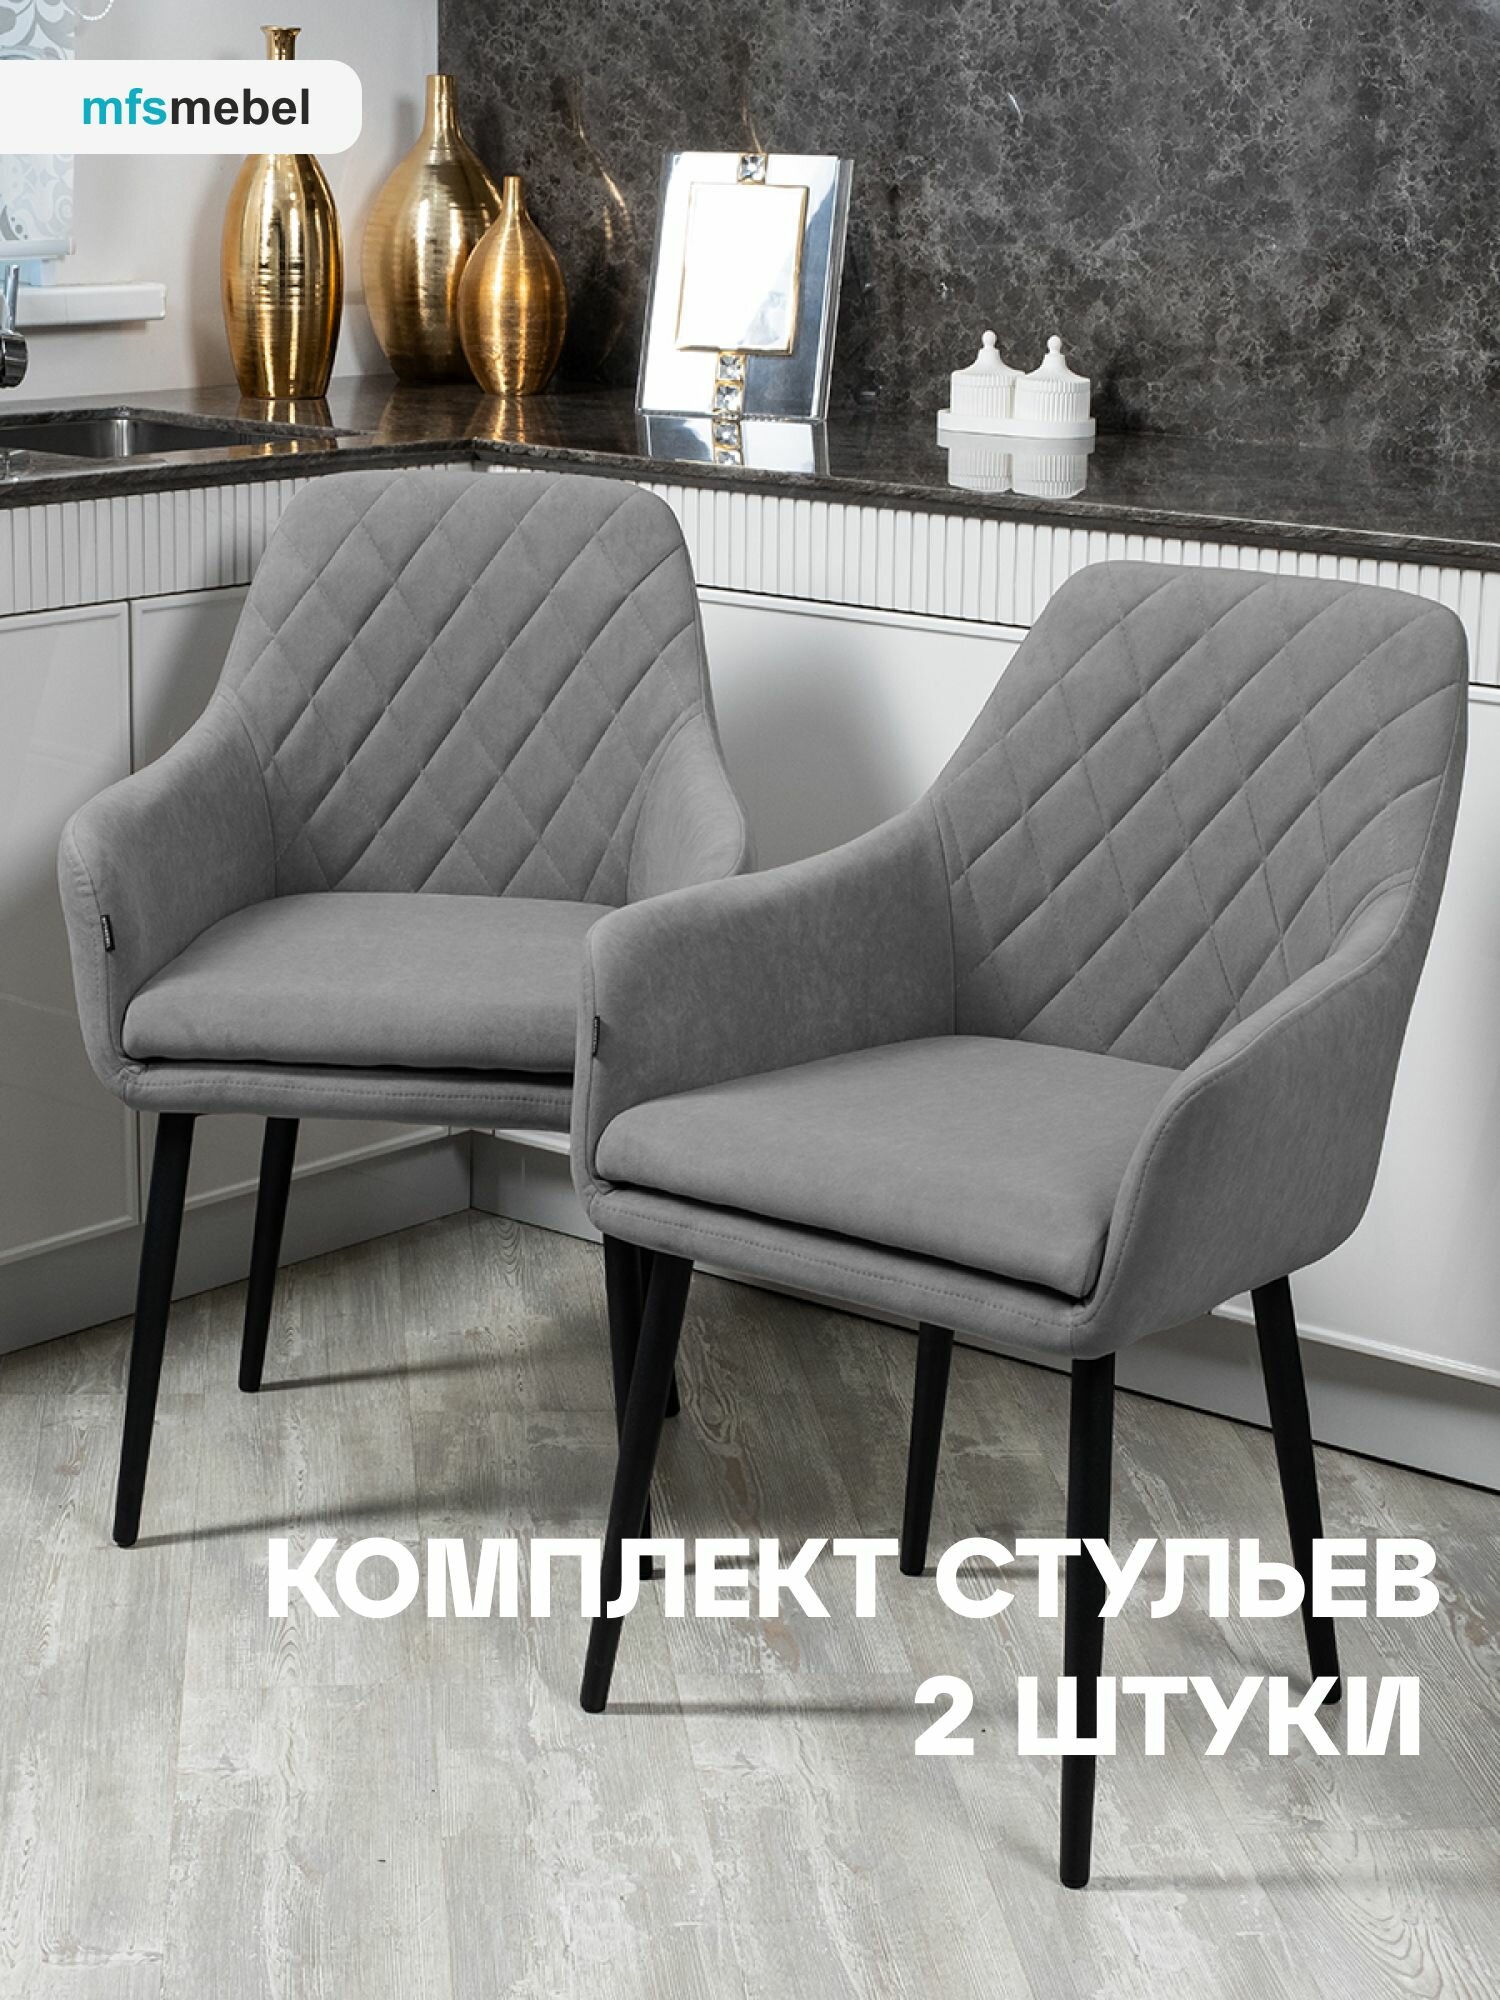 Комплект стульев для кухни Ар-Деко темно-серый, стулья кухонные 2 штуки